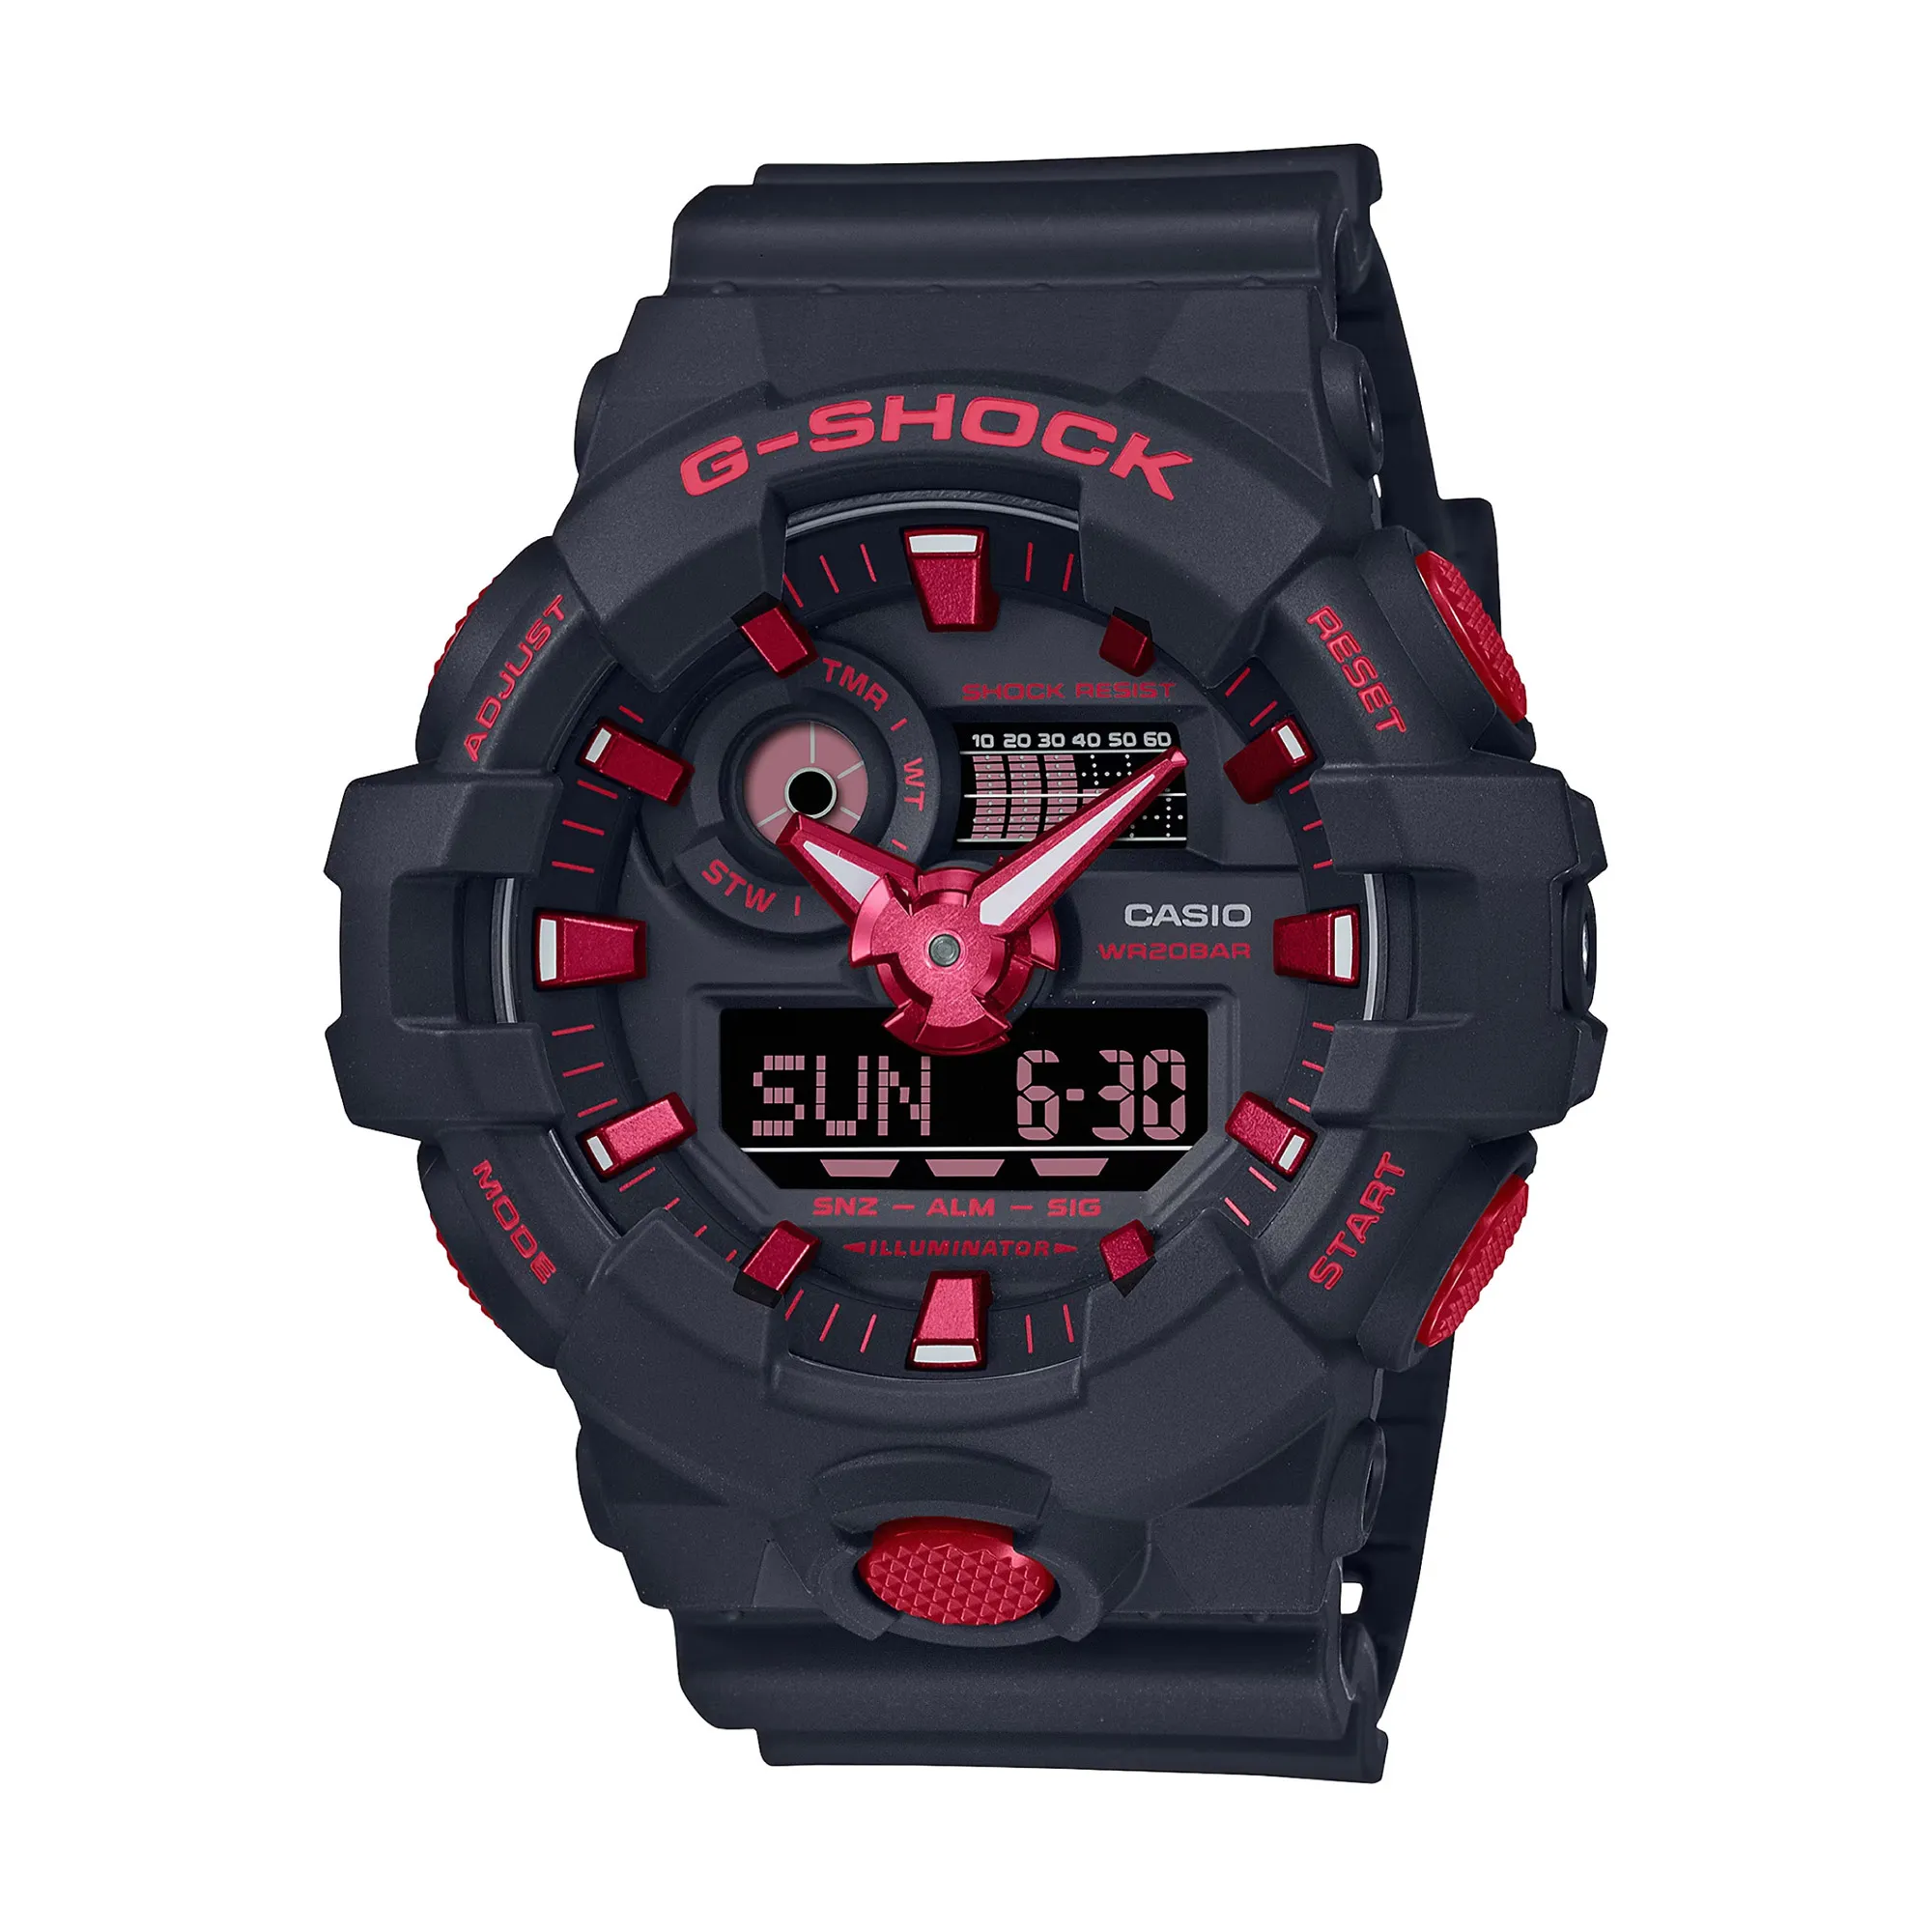 Orologio CASIO G-Shock ga-700bnr-1aer